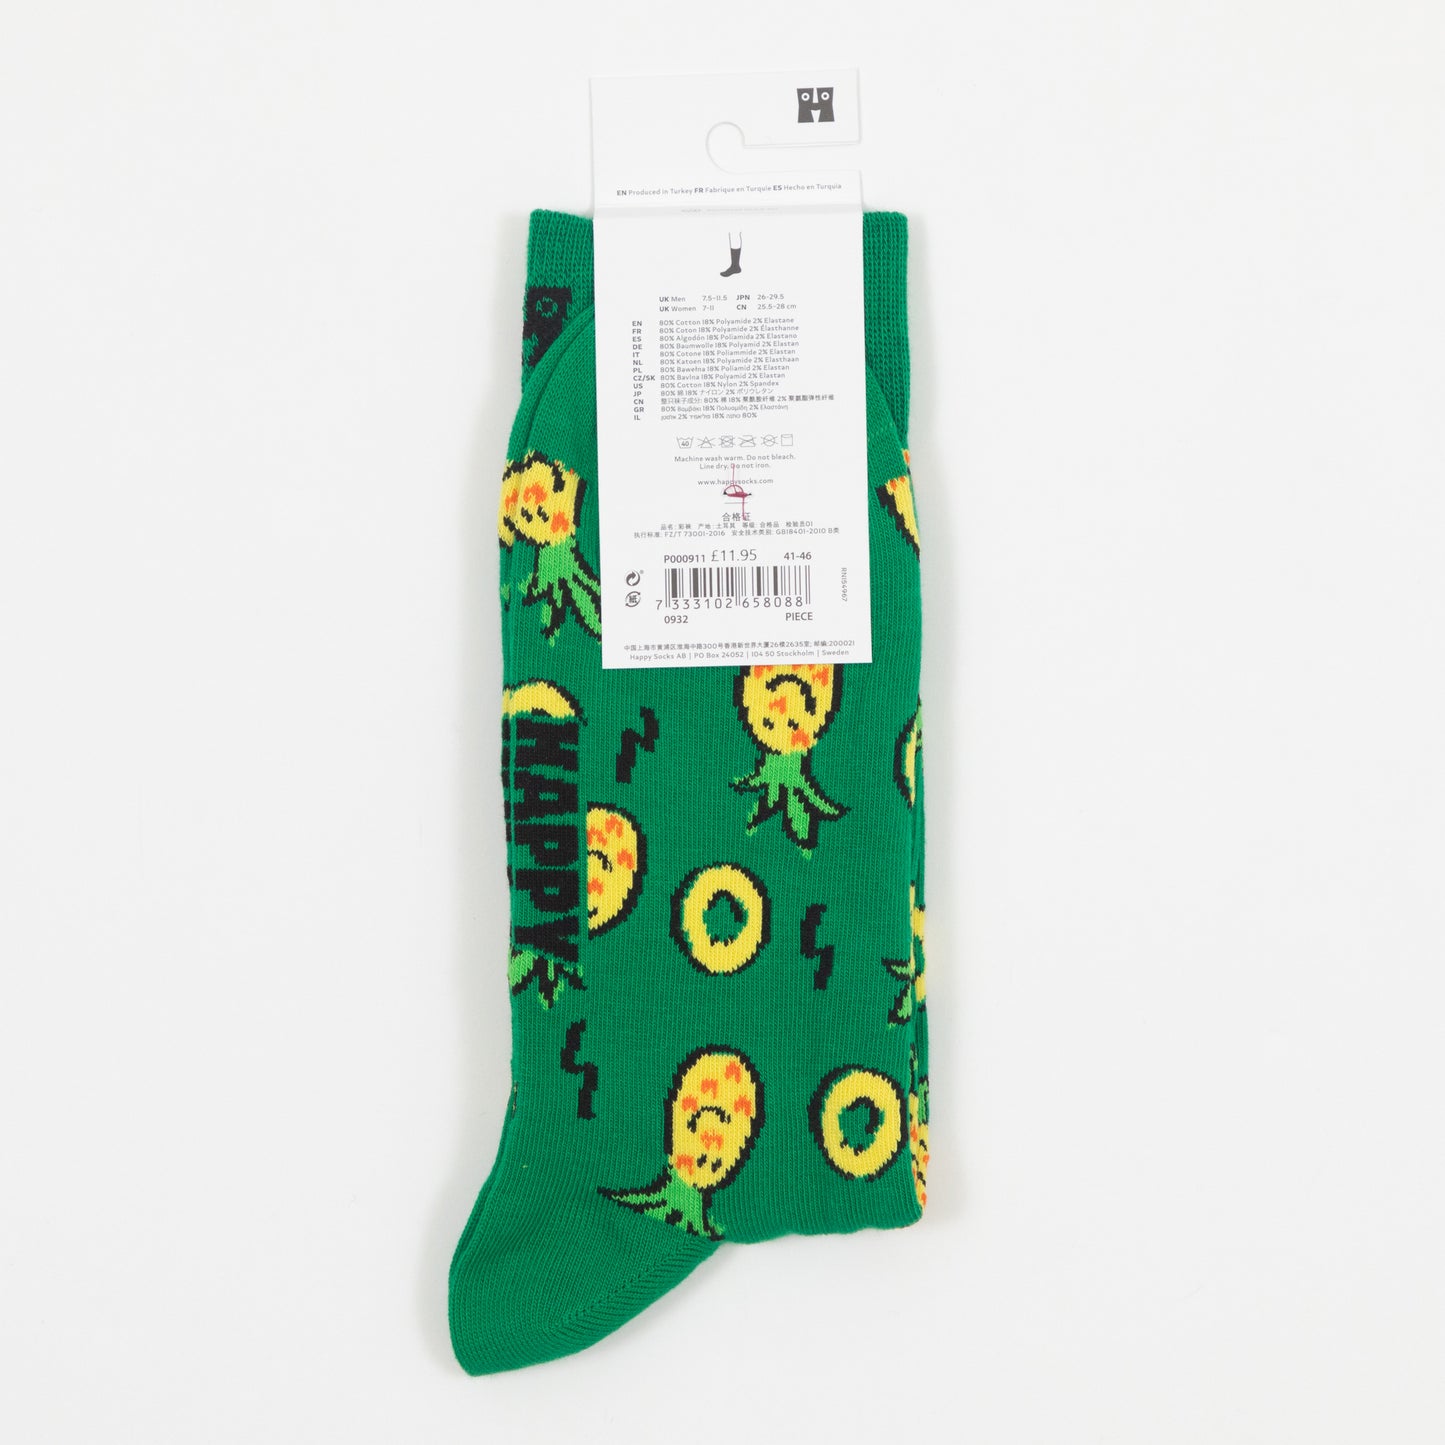 HAPPY SOCKS Pineapple Socks in GREEN